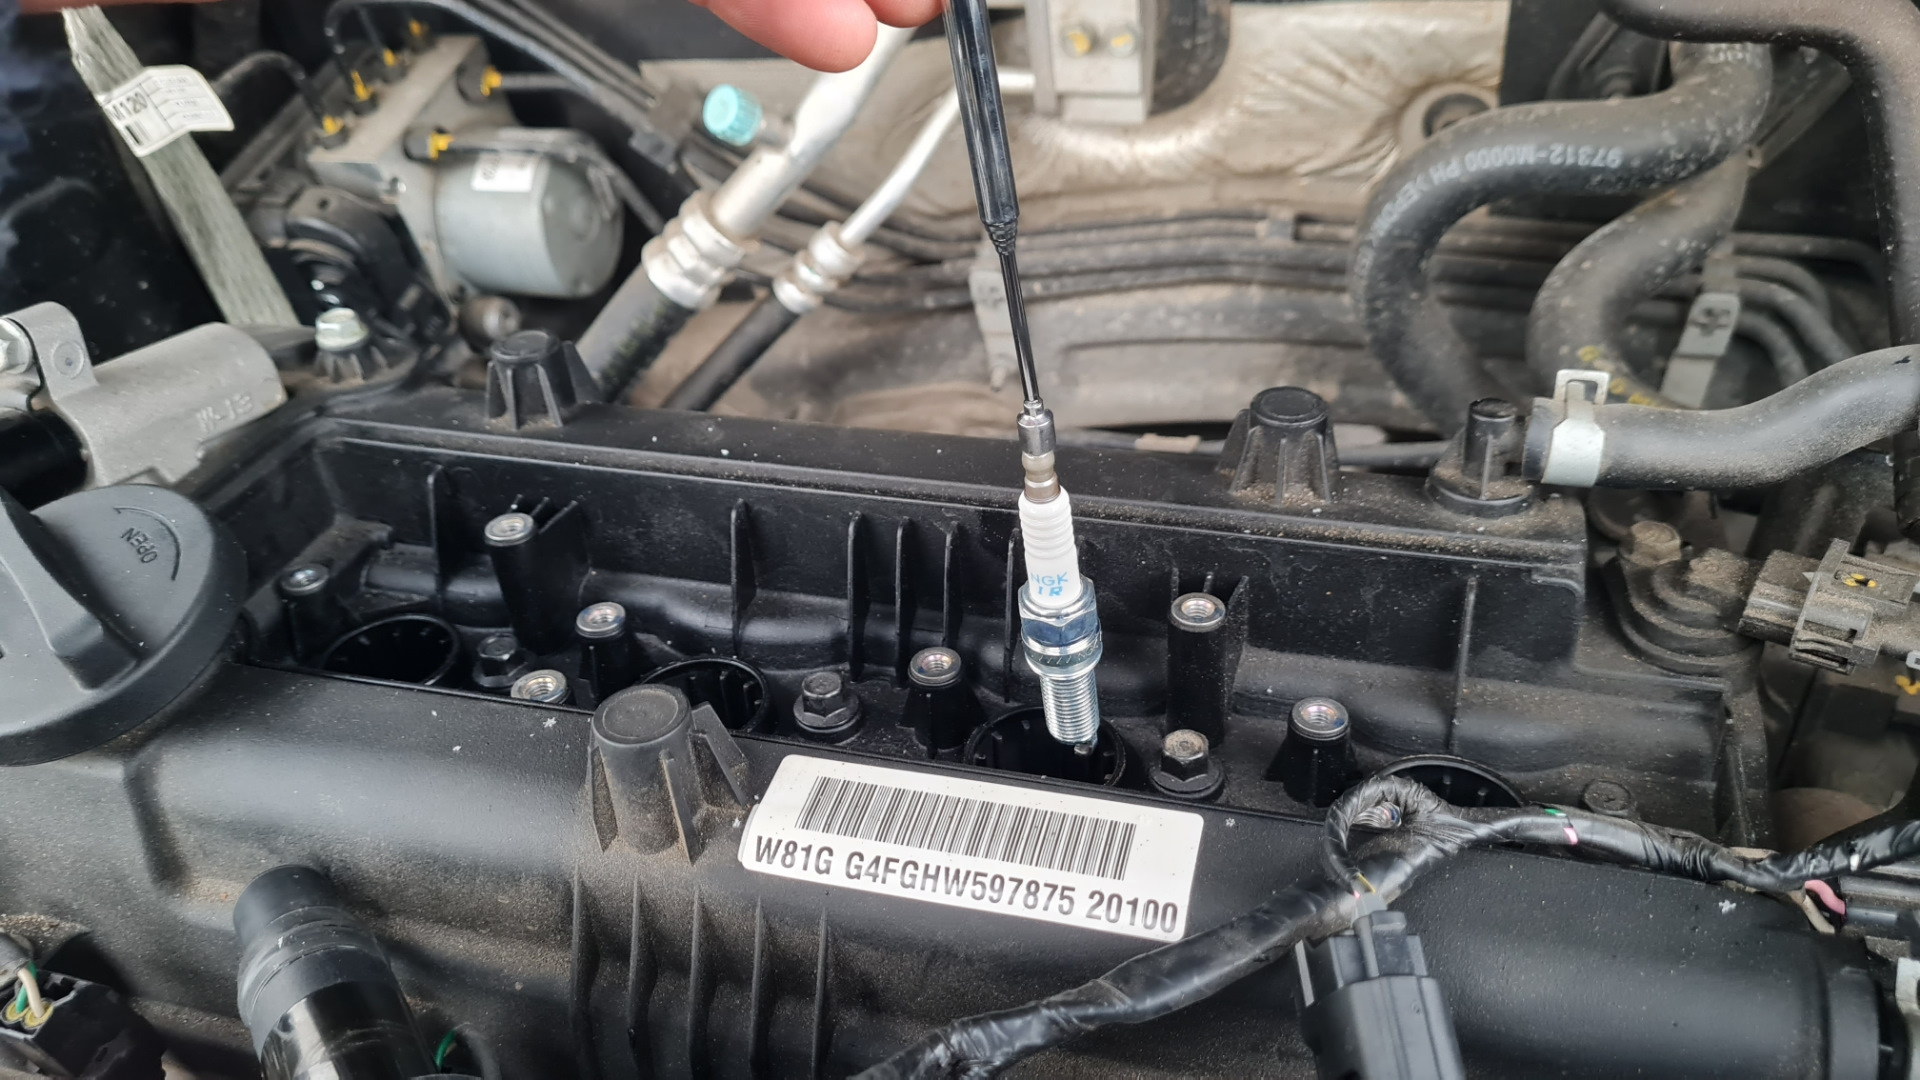 Проверка компрессии в цилиндрах двигателя Hyundai Creta